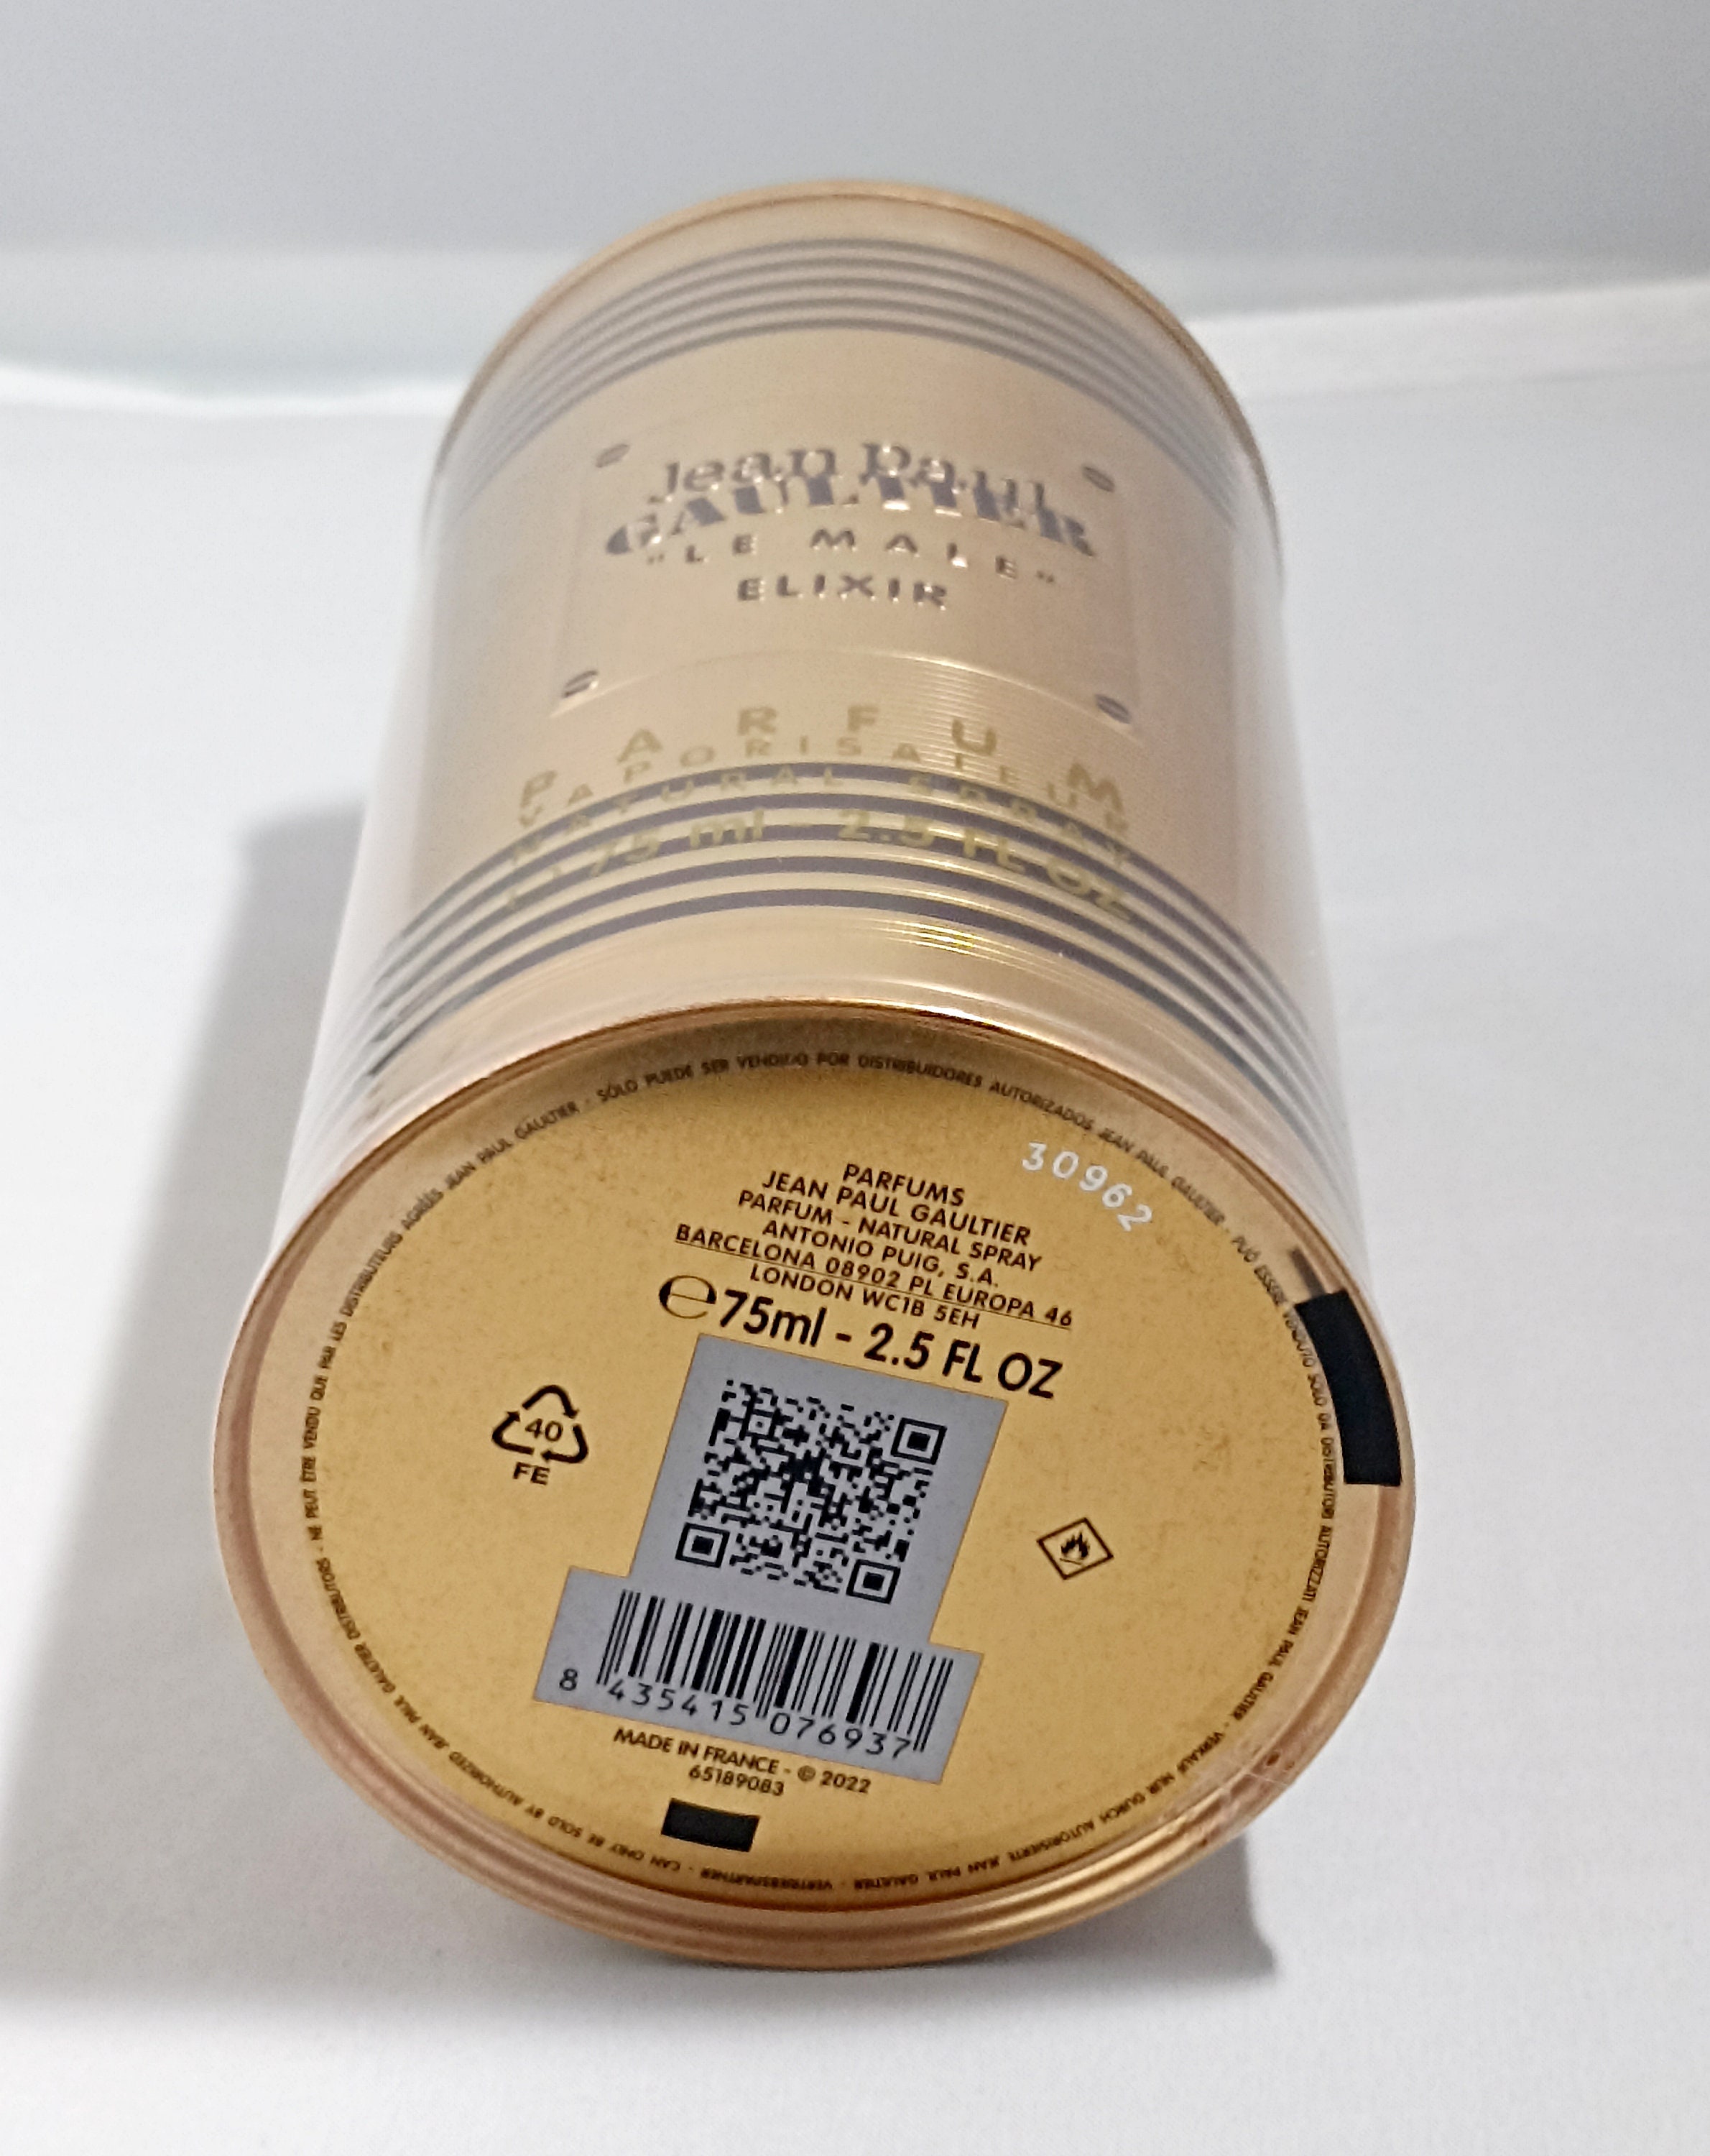 Jean Paul Gaultier Elixir Fragrance 75 Ml-new-sealed-novelty -  Norway